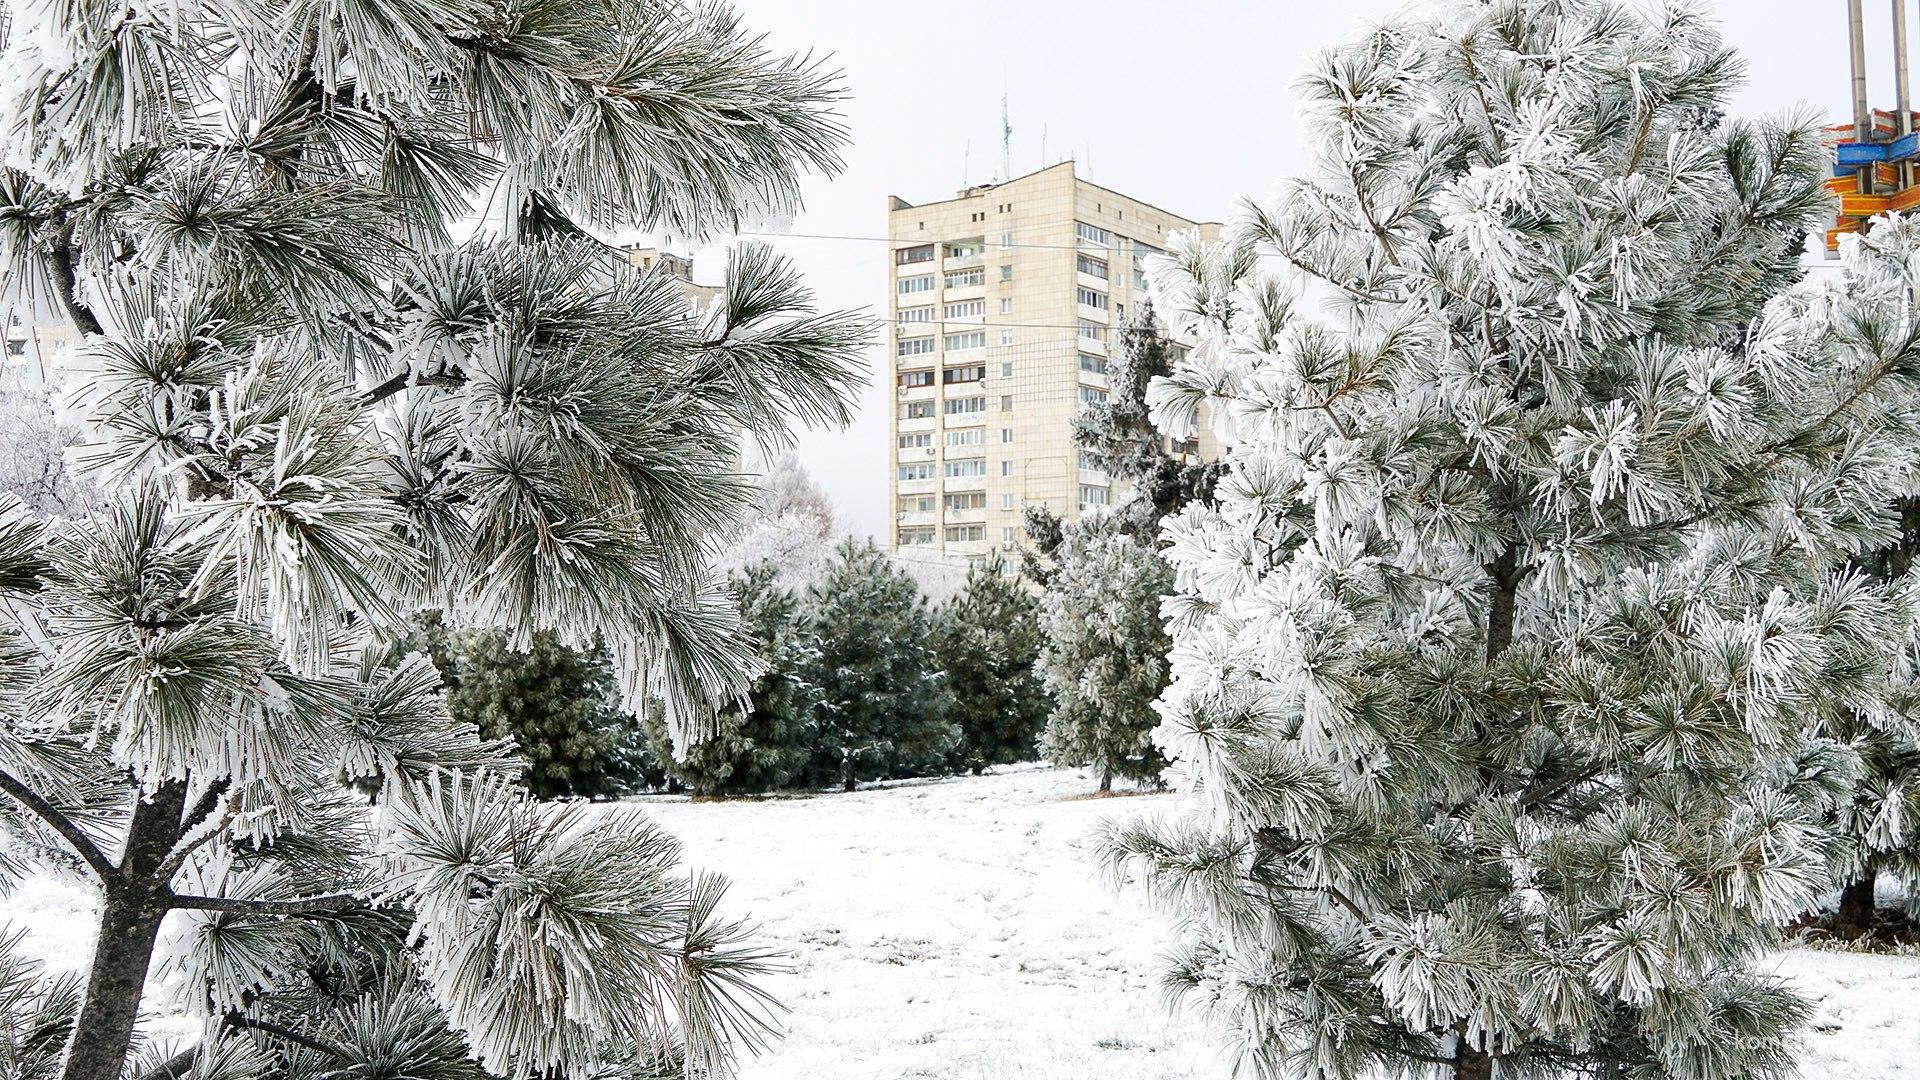 Очень холодно, зато красиво — Фоторепортаж заиндевелого комсомольского утра